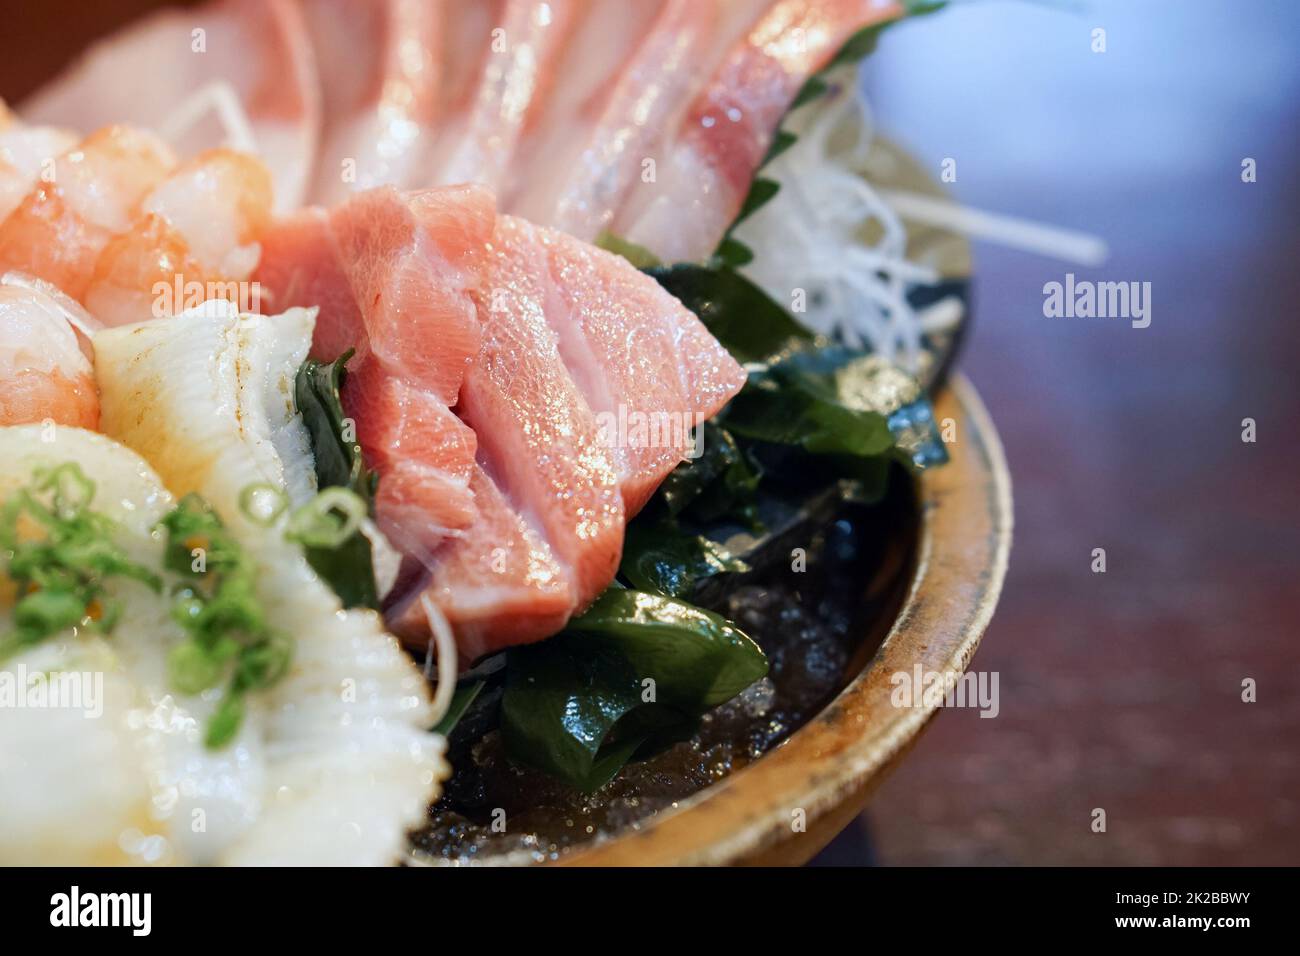 L'ensemble sashimi est magnifiquement disposé dans une assiette en bois. Buffet de cuisine japonaise. Choix du chef : thon, engawa, crevettes et hamachi Banque D'Images